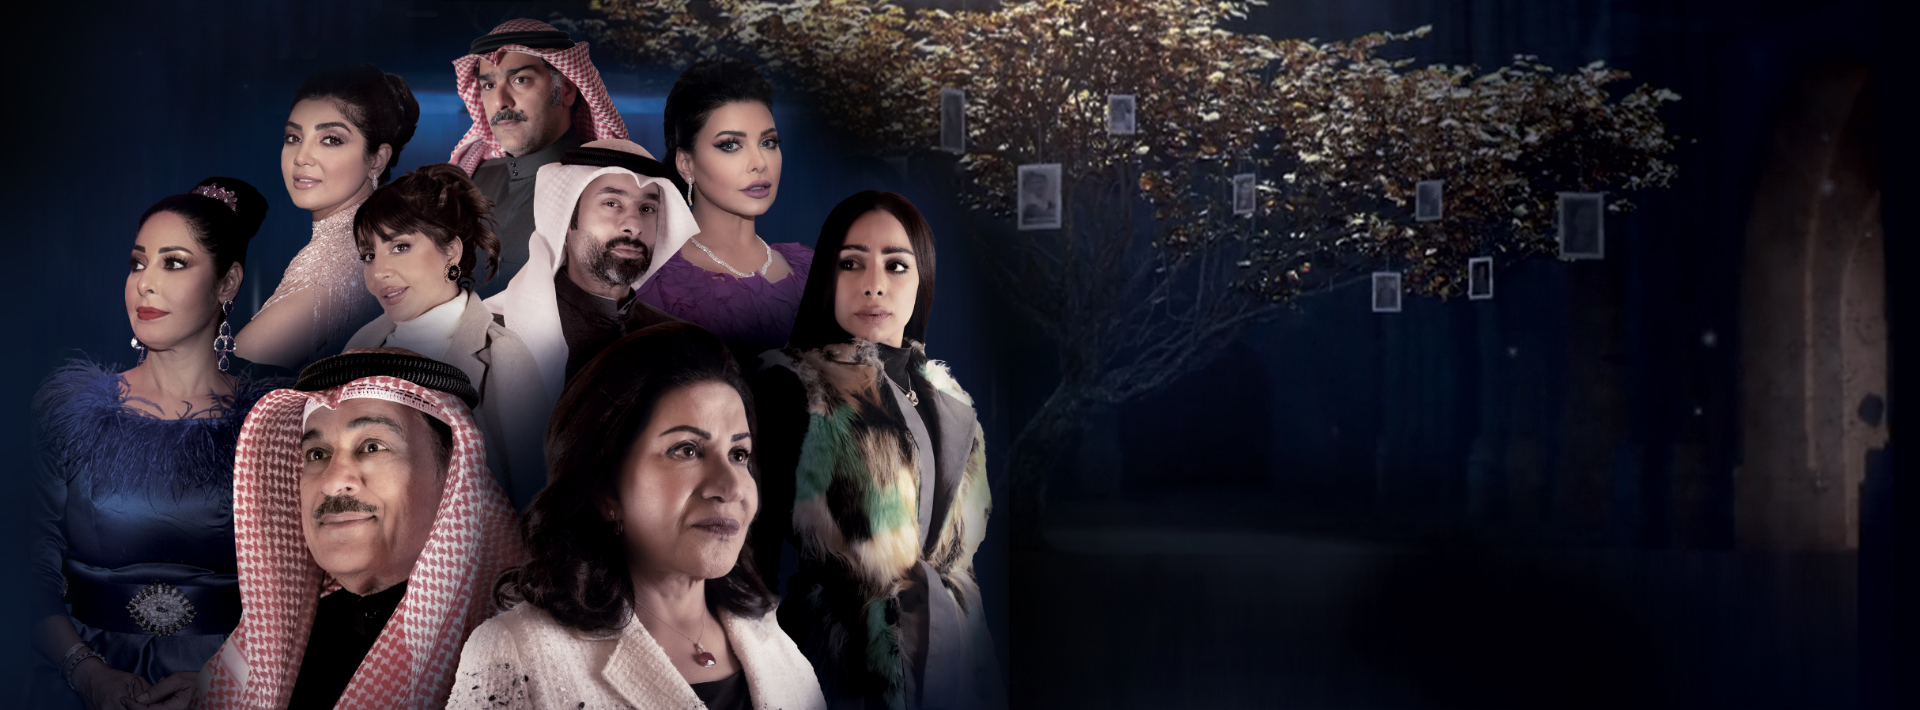 موعد وتوقيت عرض مسلسل جنة هلي على قناة ابوظبي رمضان 2020